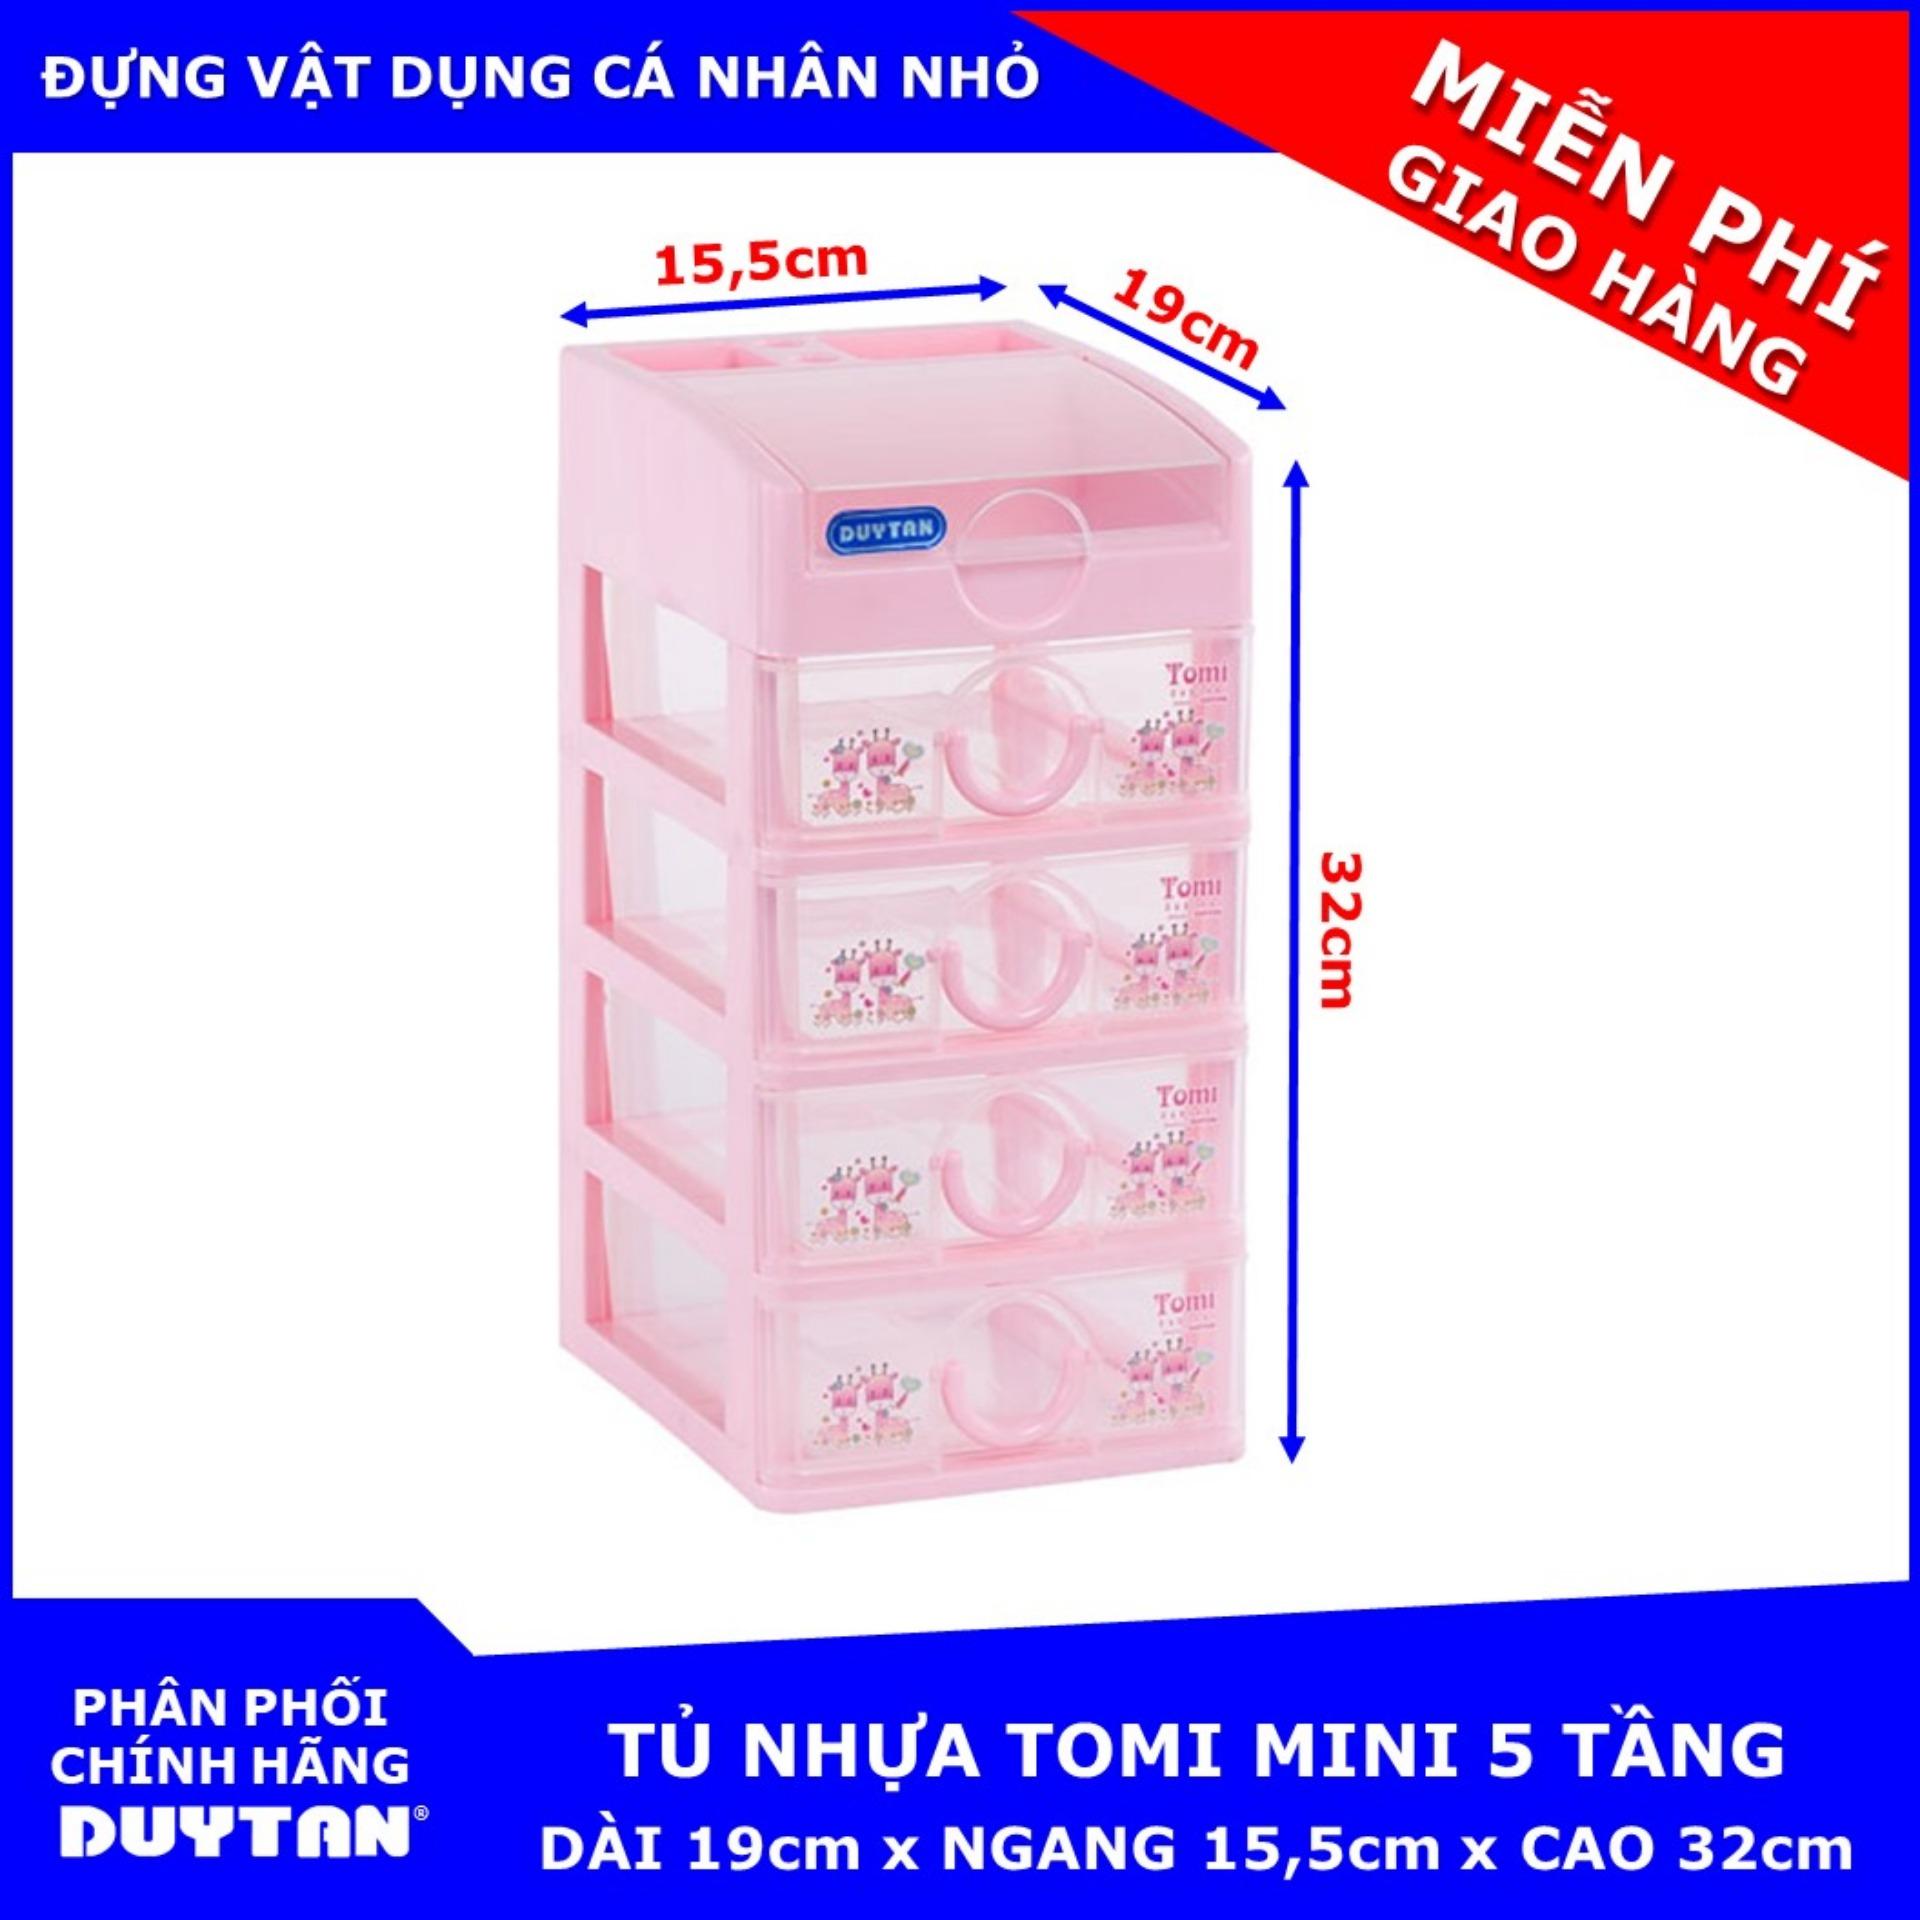 Tủ nhựa Duy Tân TOMI Mini 5 tầng | Lazada.vn